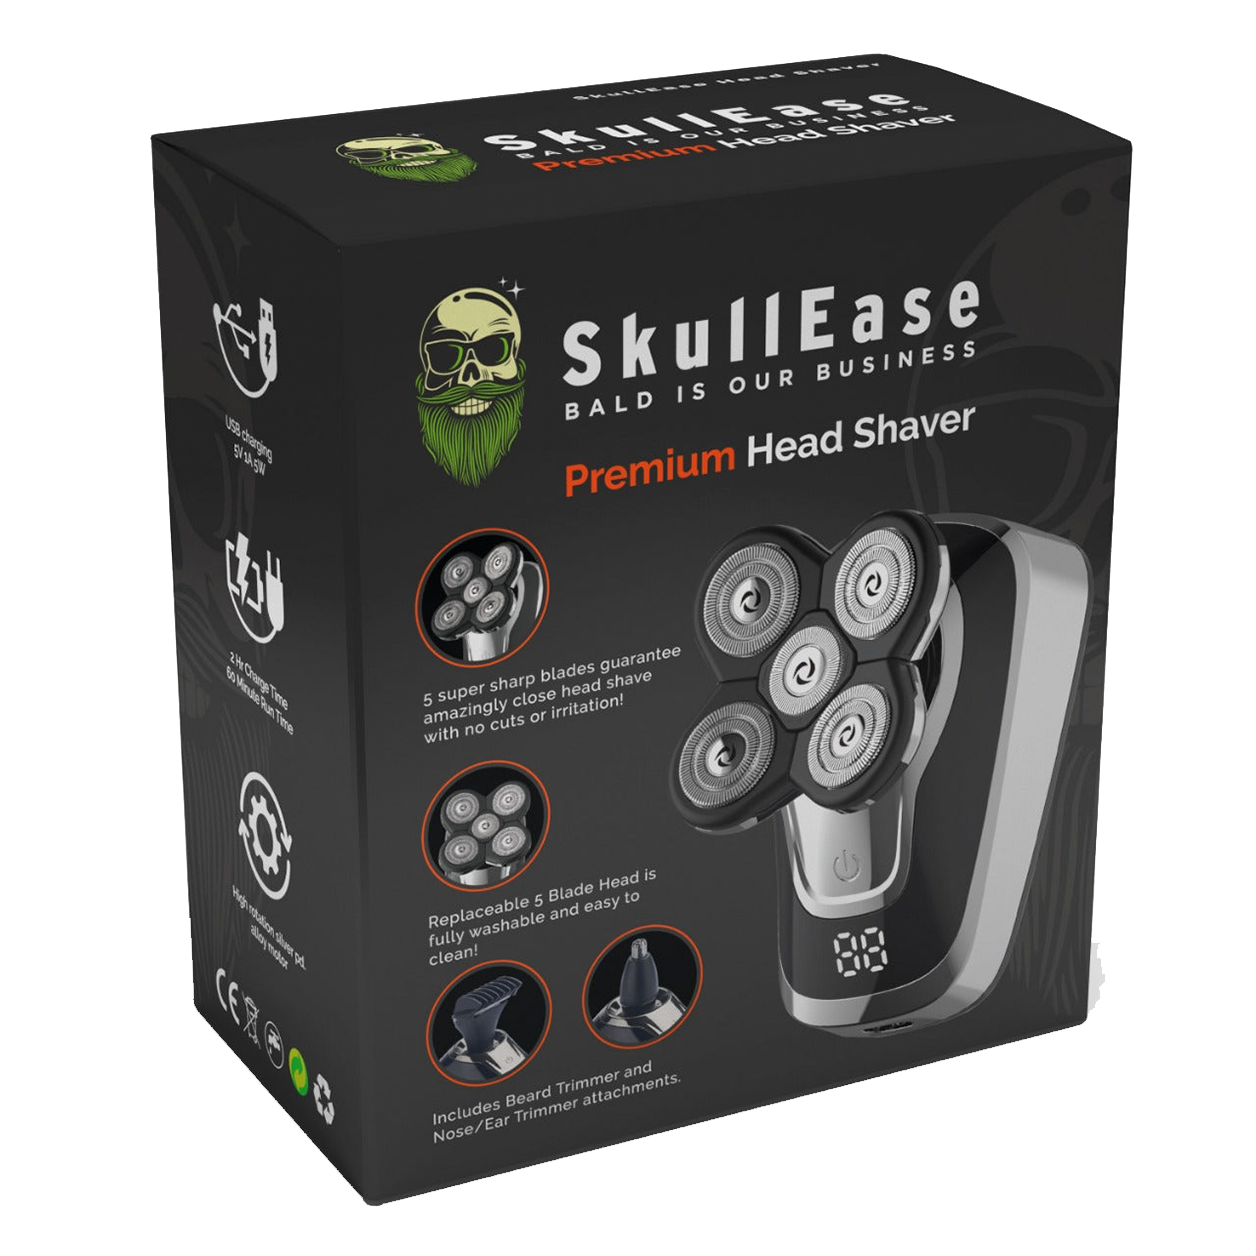 SkullEase Premium Head Shaver